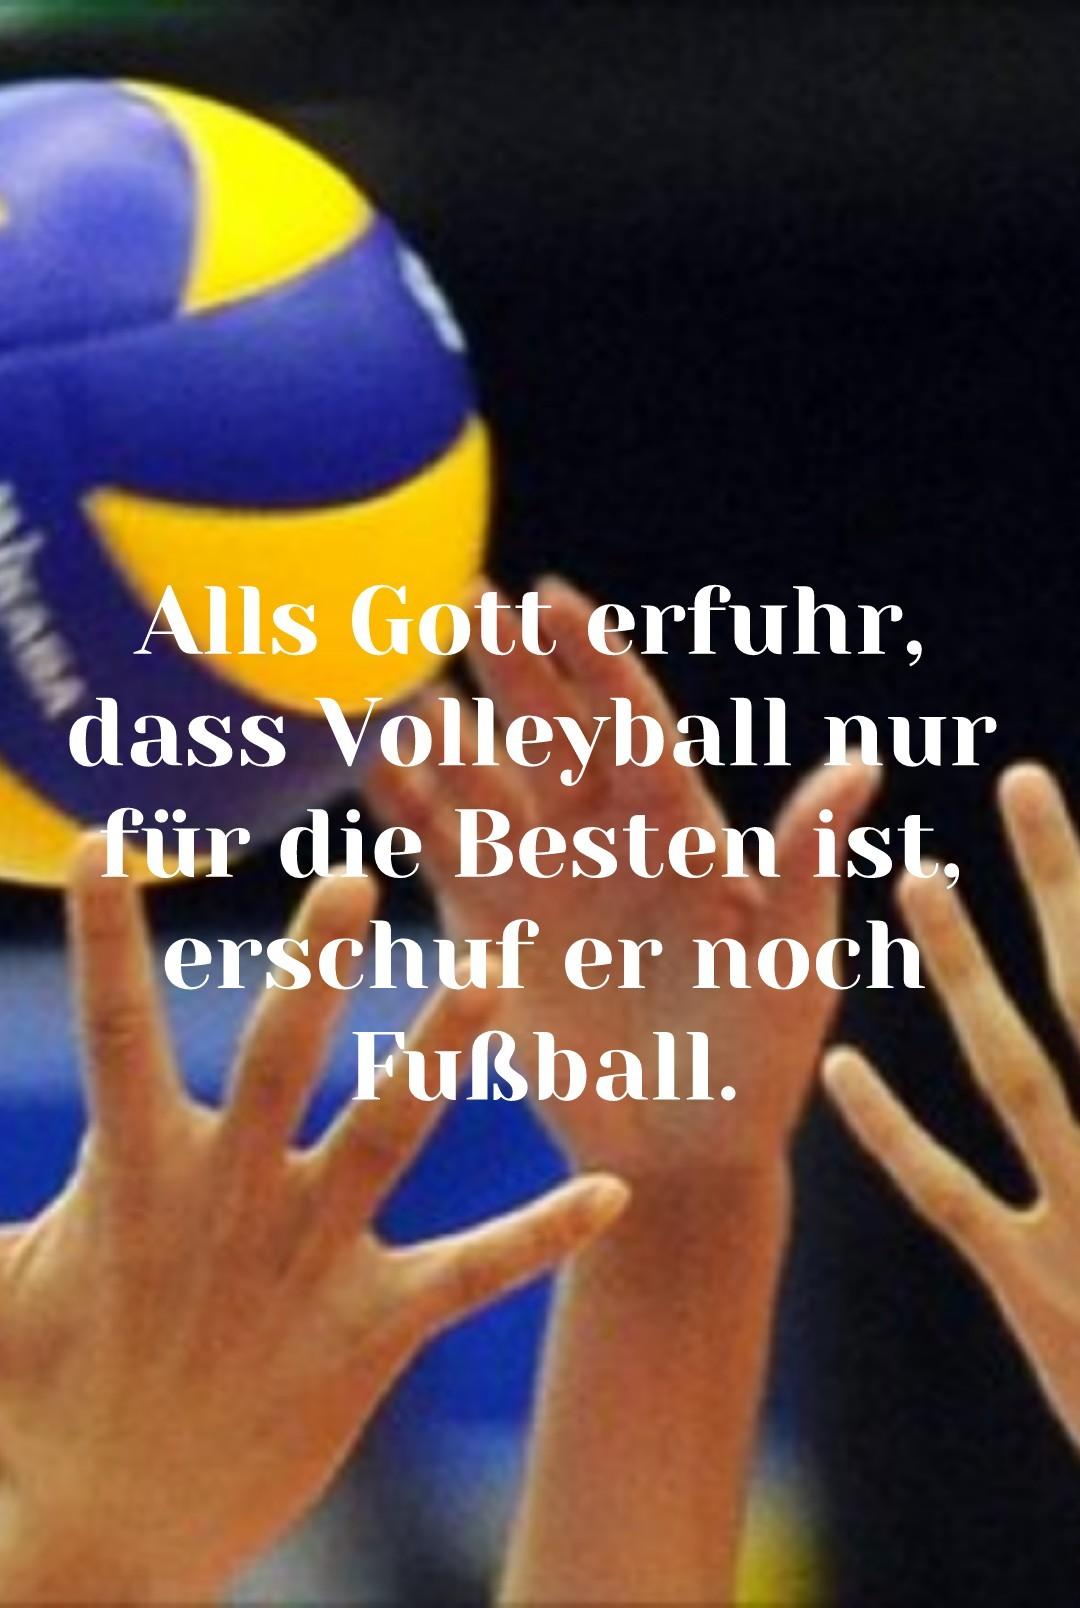 #volleylove